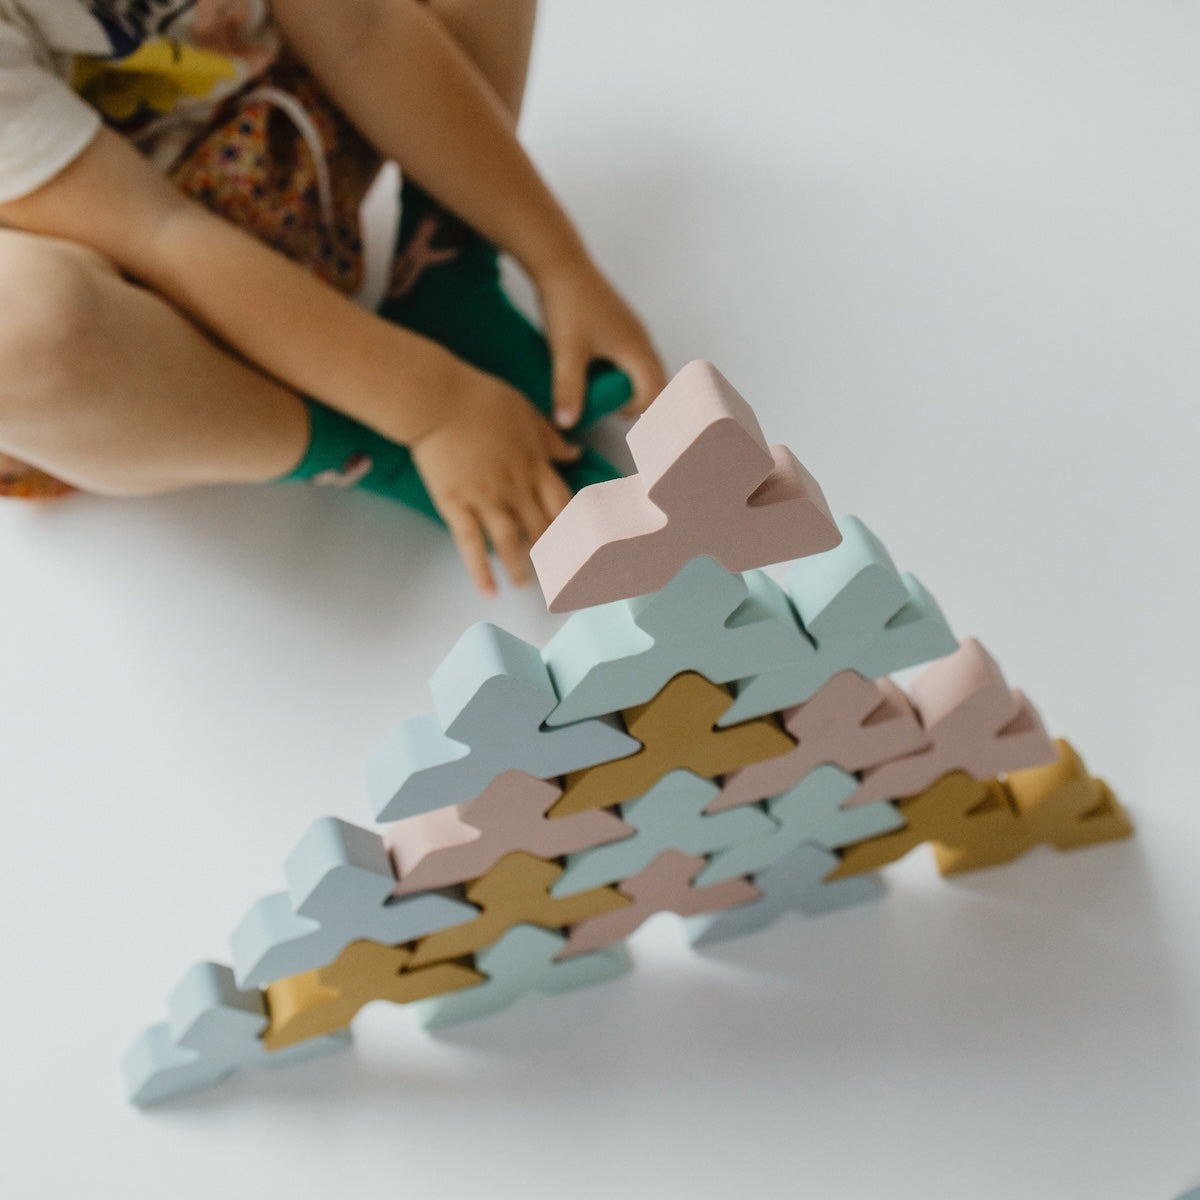 Bouwen met blokken is nét wat interessanter met deze Moes Play Trianglo bouwblokken. Dit zijn namelijk geen gewone blokken, maar dit zijn unieke driehoekige vormen, ontworpen om bouwen, puzzelen en stapelen te bevorderen. VanZus